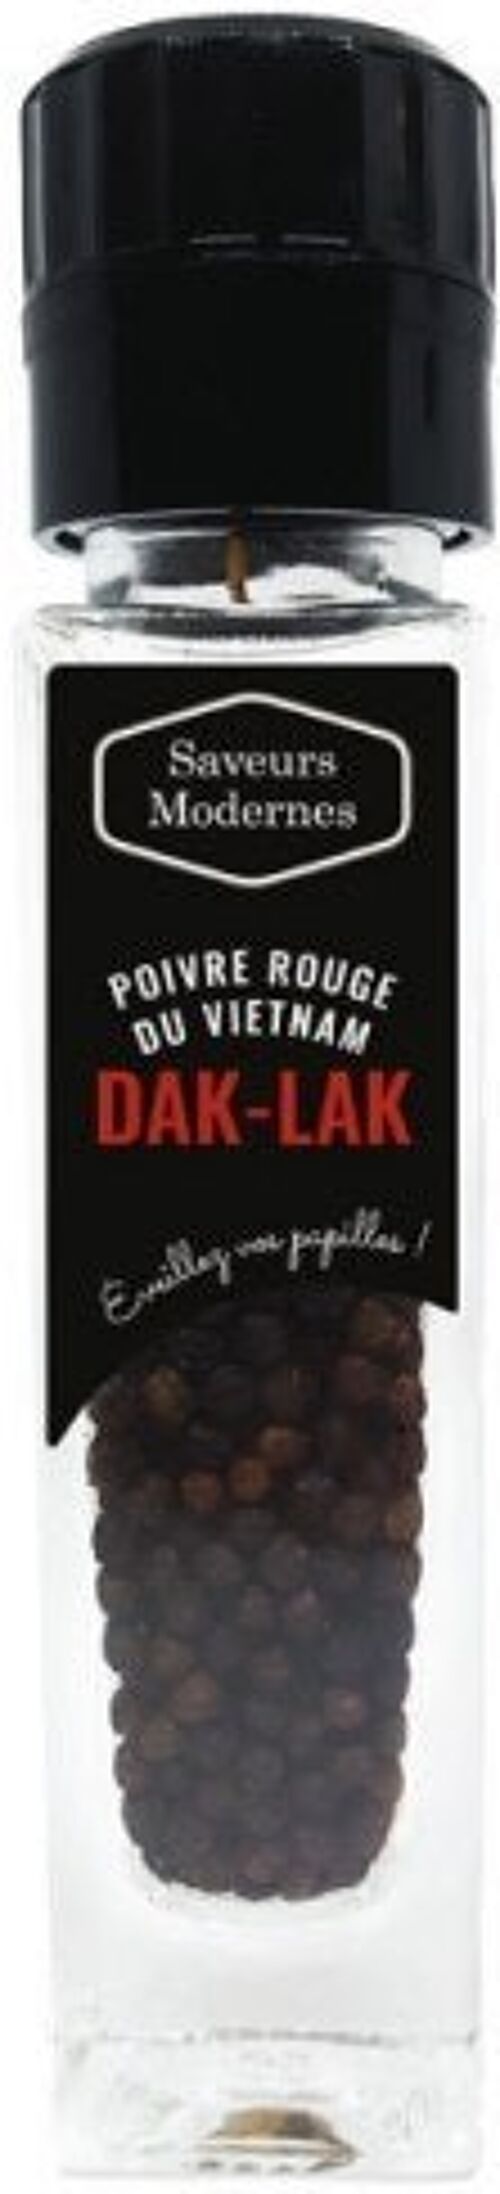 Poivre Dal-lak rouge du Vietnam